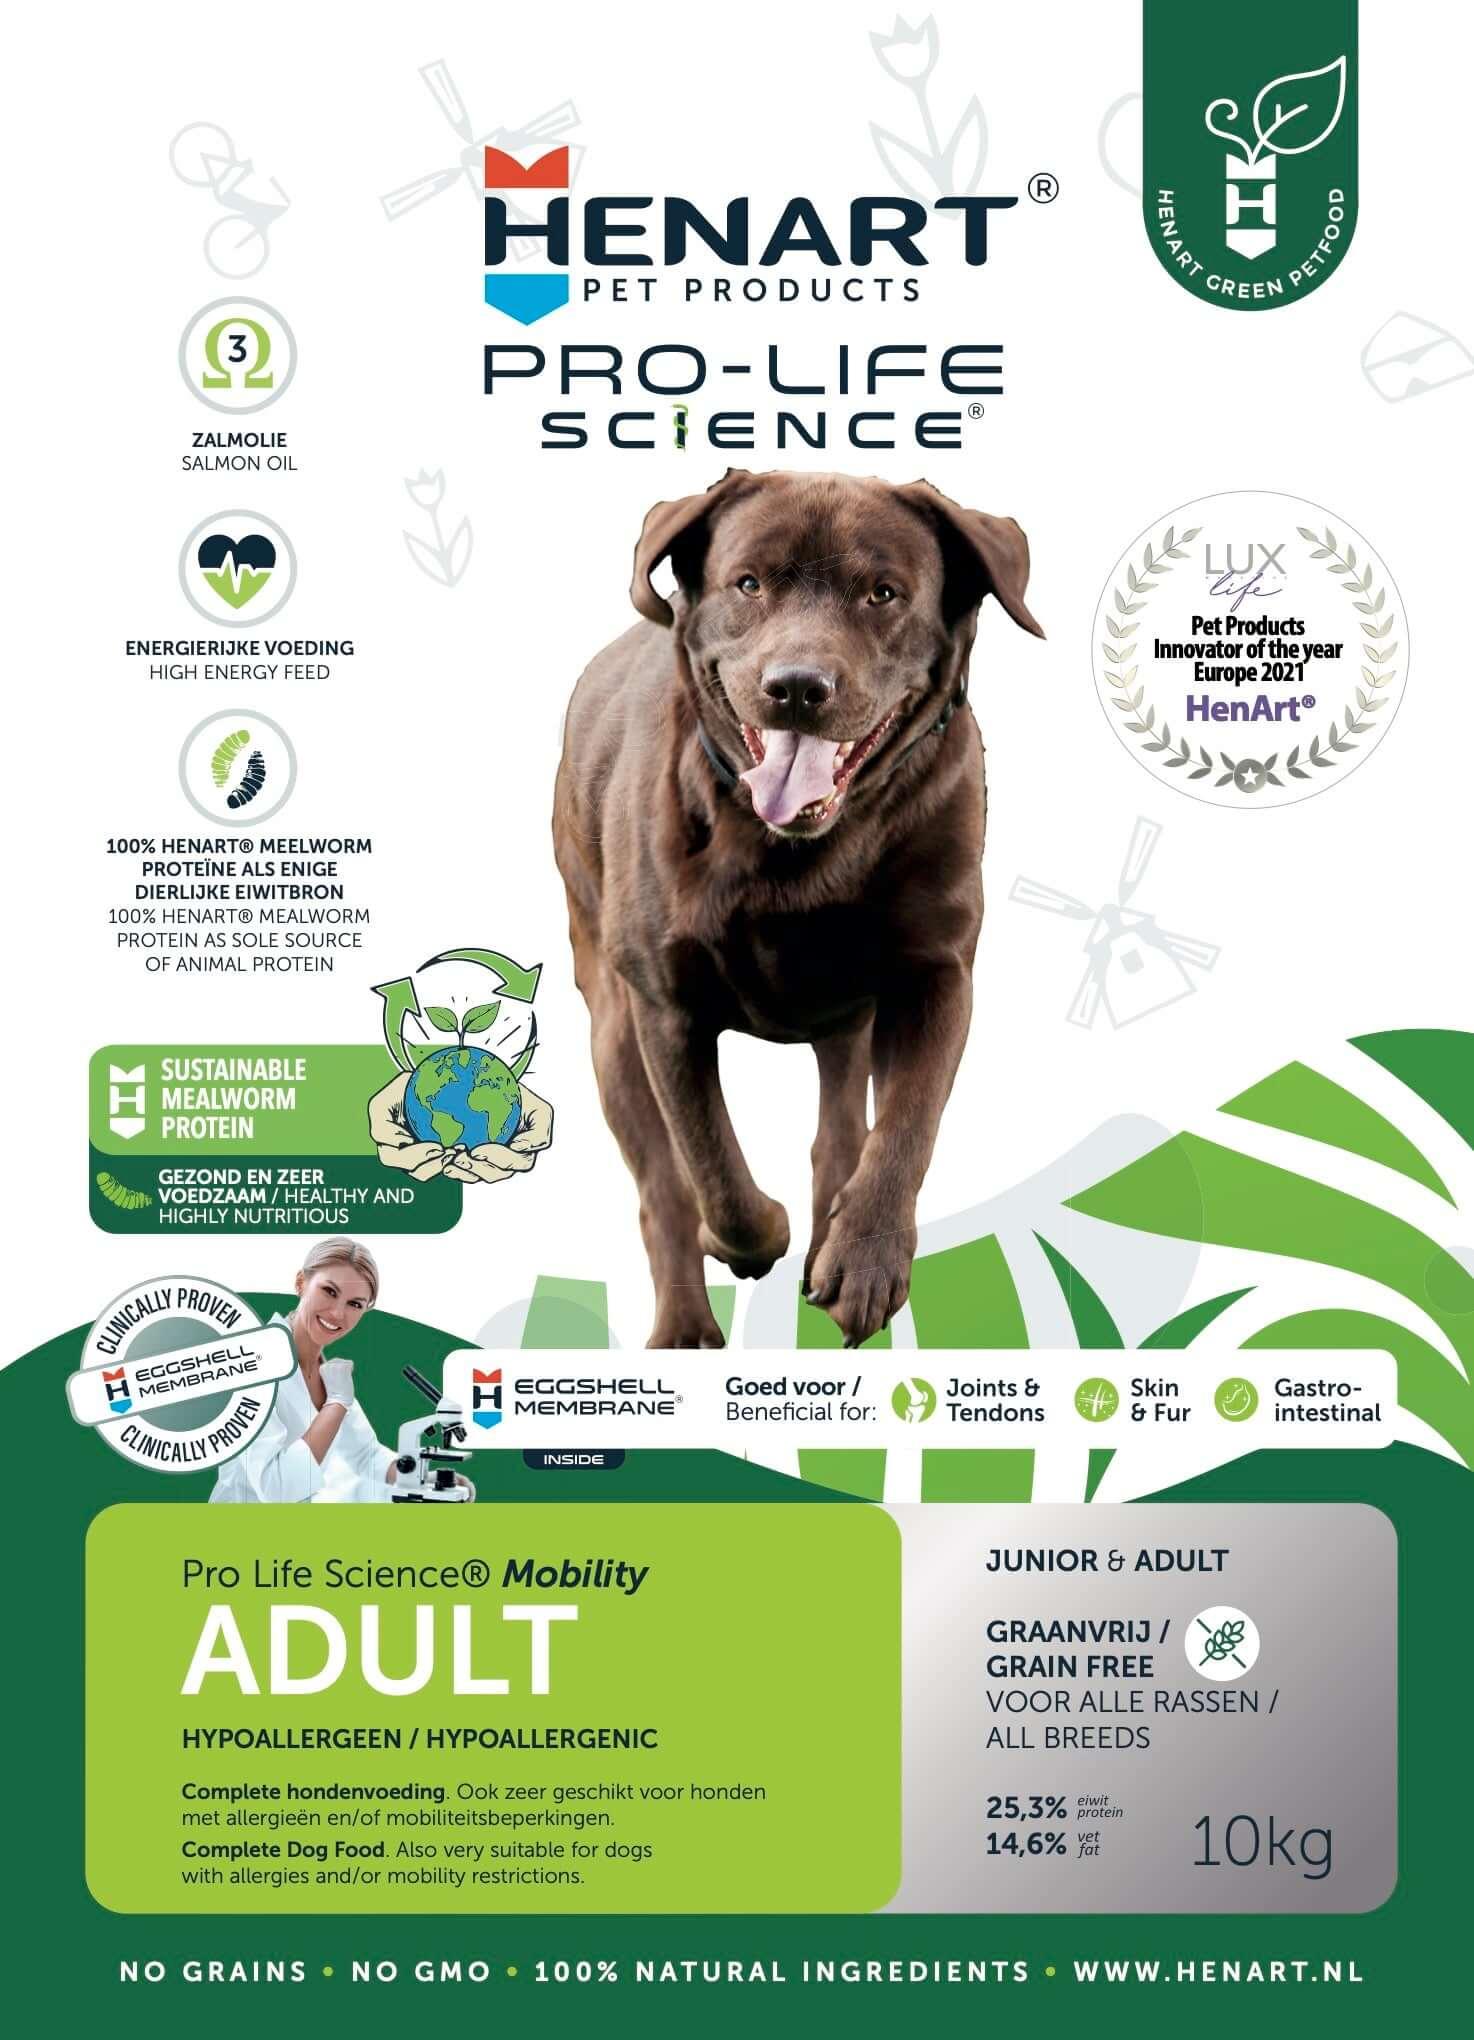 Insekten-Trockenfutter für ausgewachsene Hunde - HenArt® | Nachhaltiges Tierfutter für Hund und Katze 